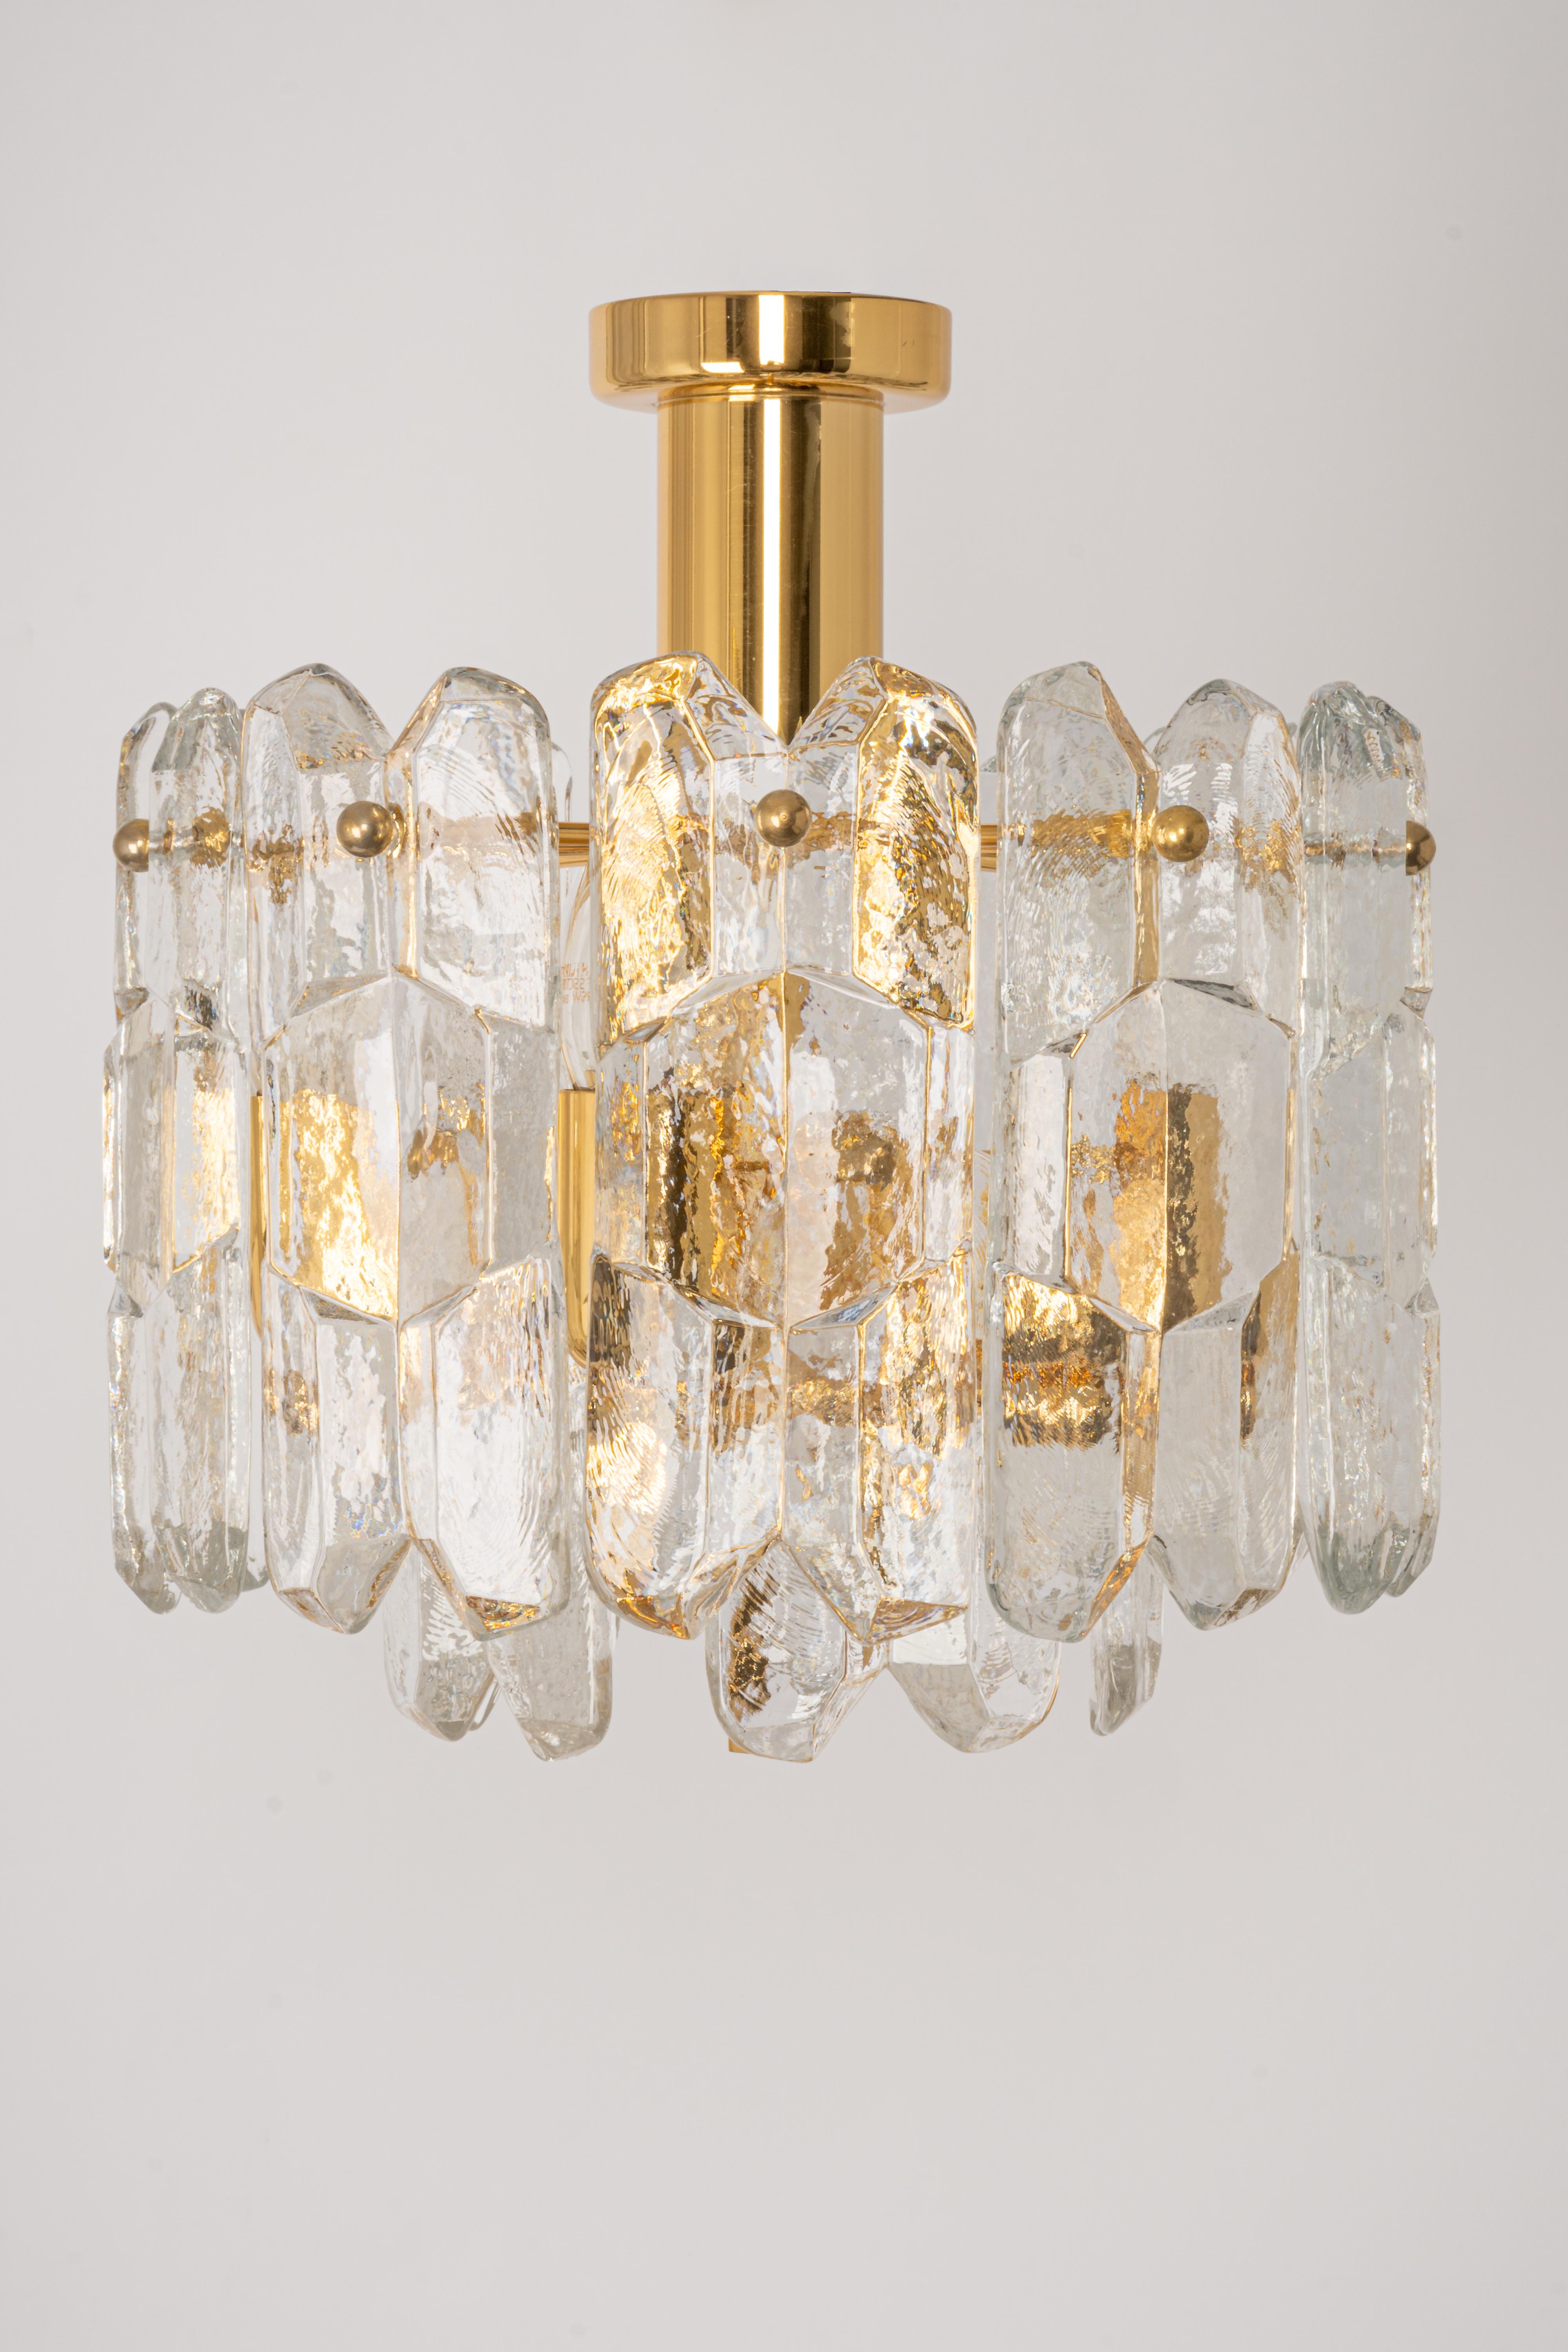 Eine wunderbare Leuchte aus vergoldetem Messing besteht aus 15 Murano-Kristallgläsern auf einem vergoldeten Messingrahmen. Er stammt von Kalmar (Serie: Palazzo), Österreich, hergestellt ca. 1970-1979.

Zwei Etagen Struktur sammelt viele